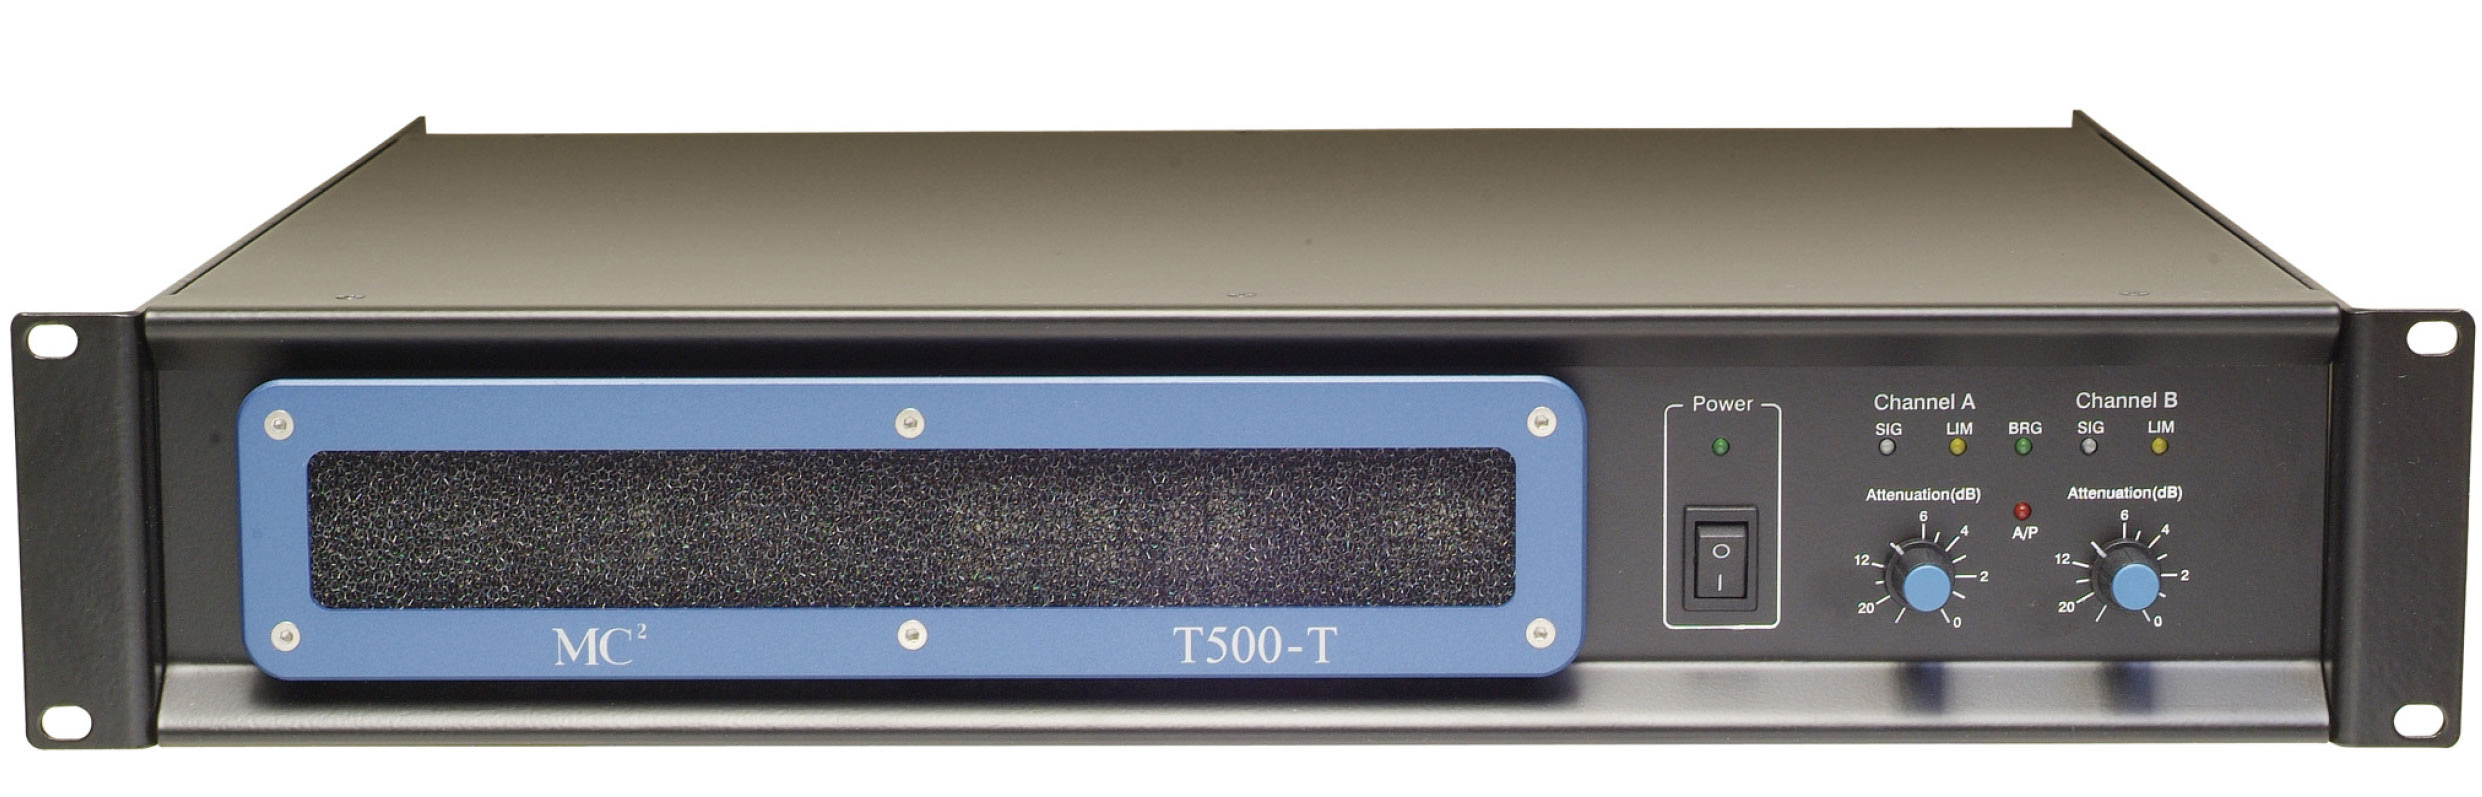 Verstärker T500-T - MC² Audio